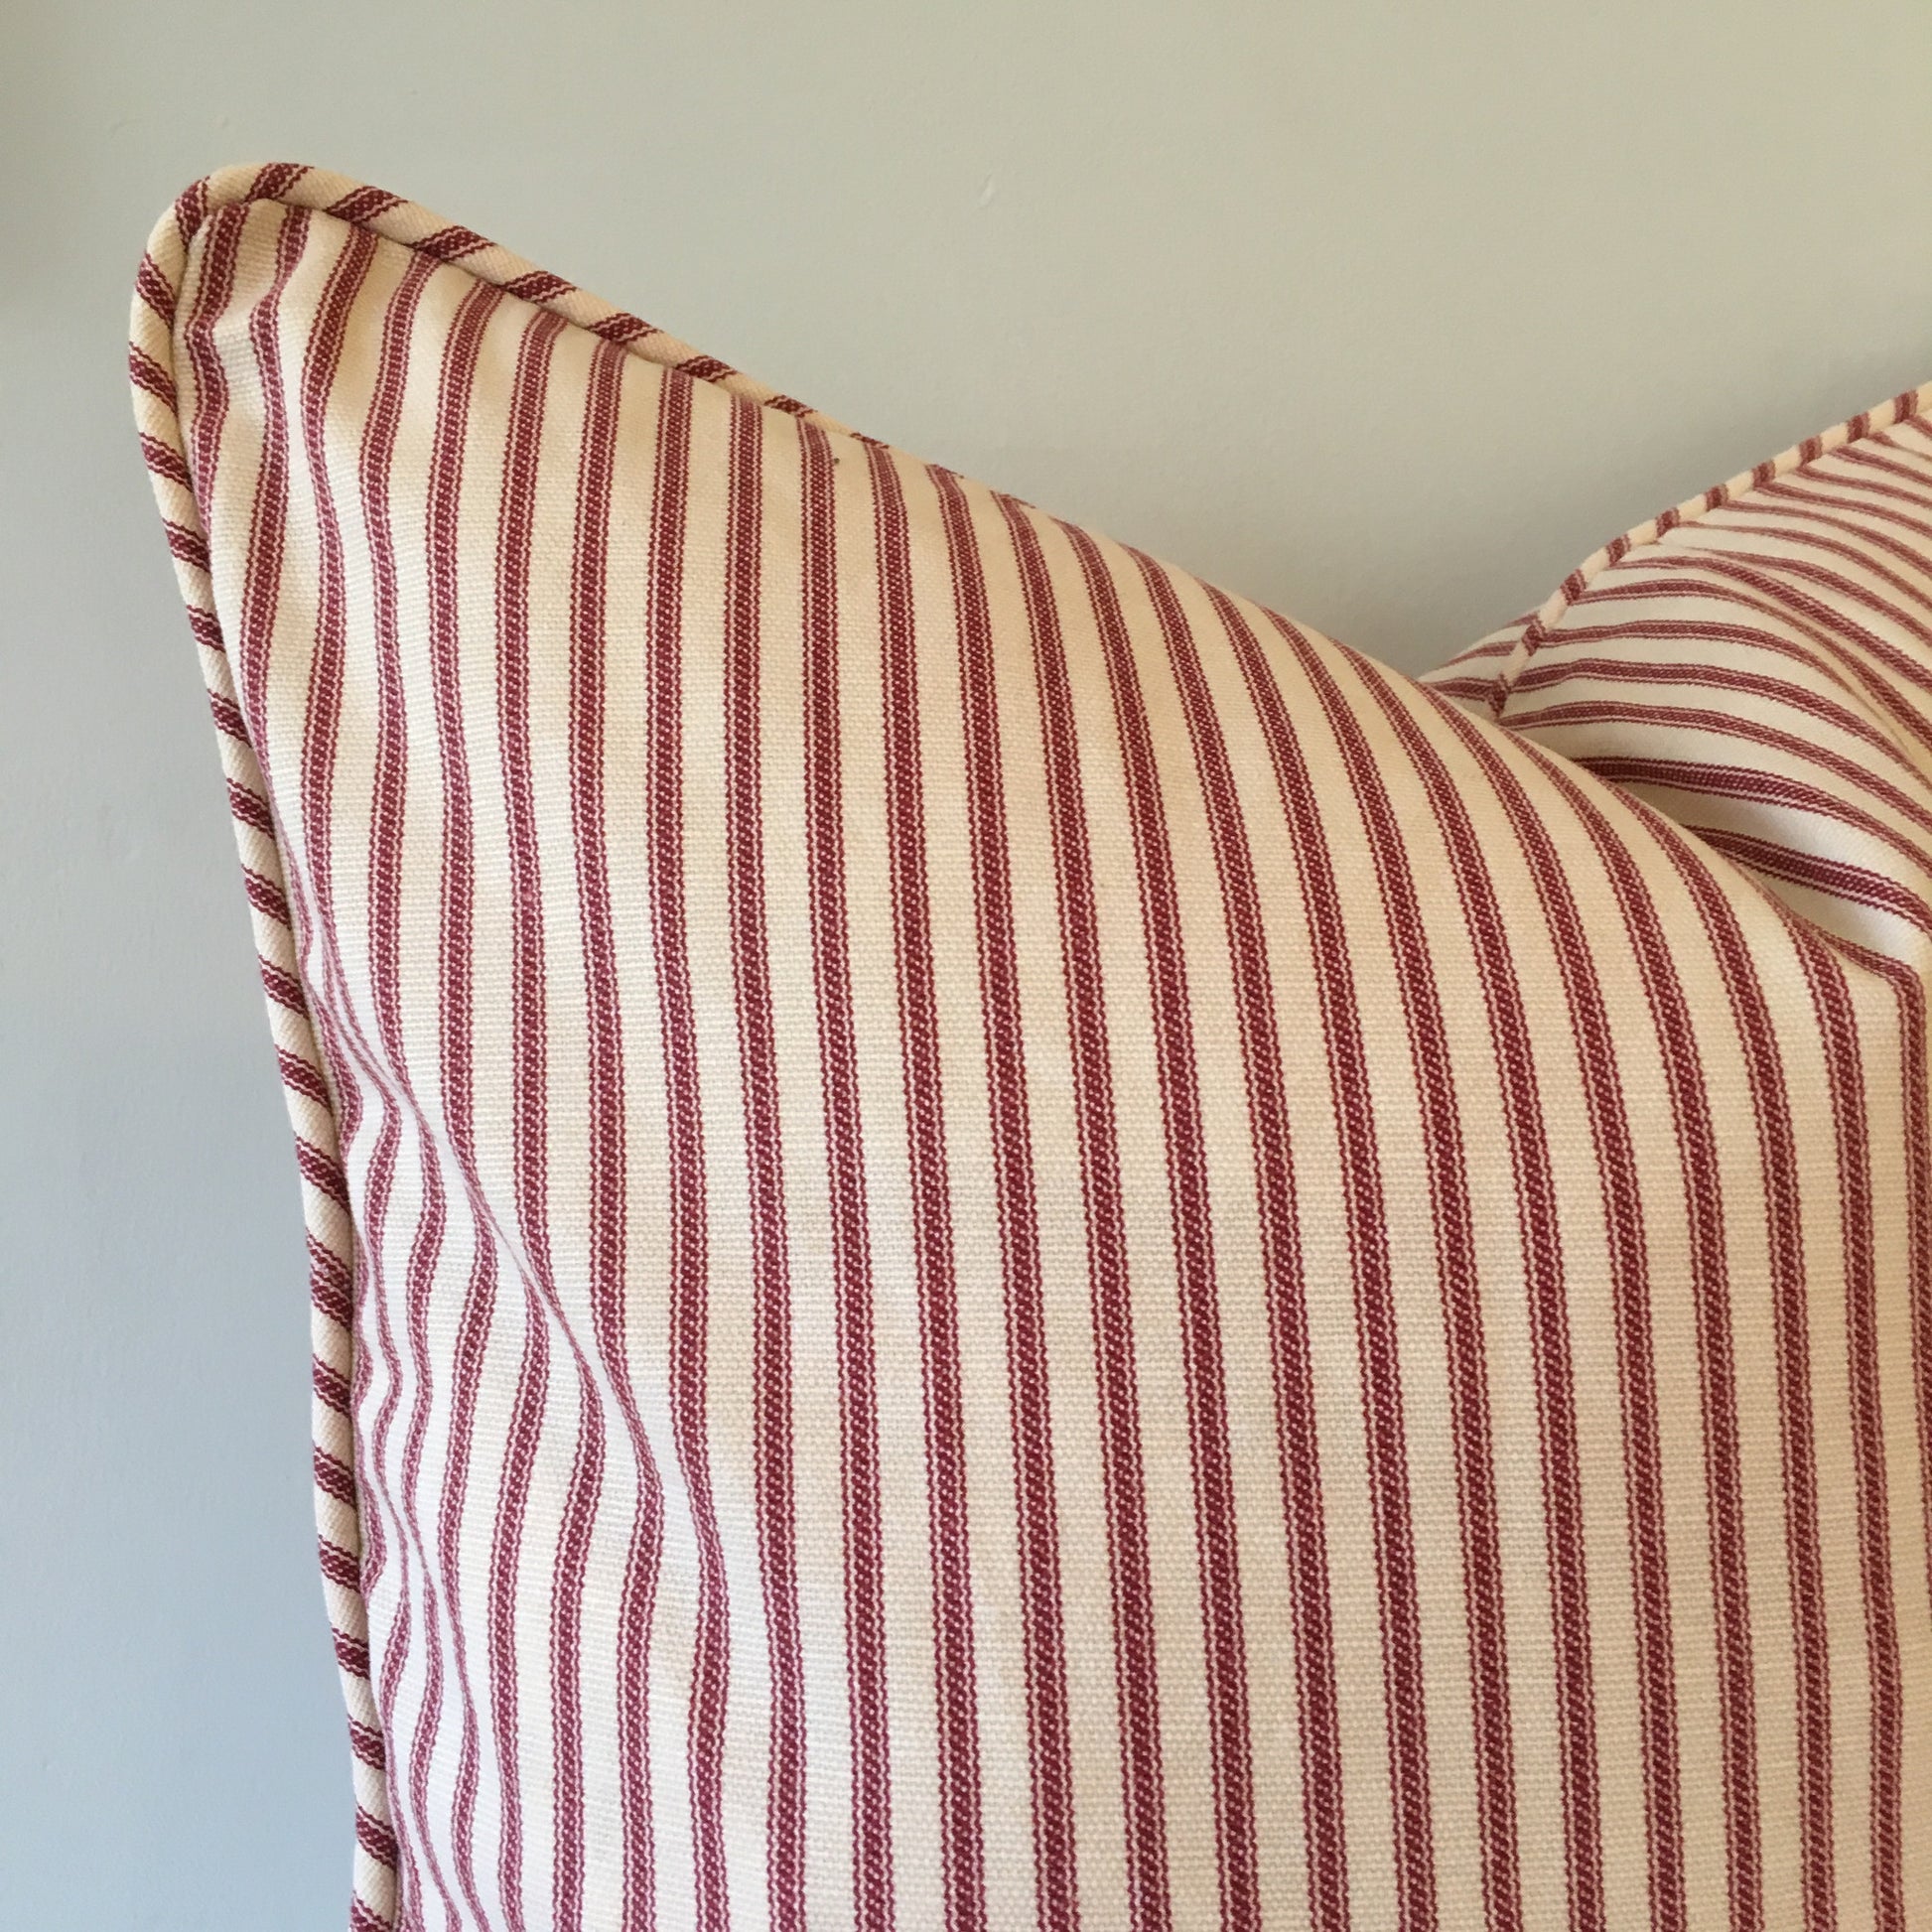 Ticking Stripe Throw Pillow Cover 18x18